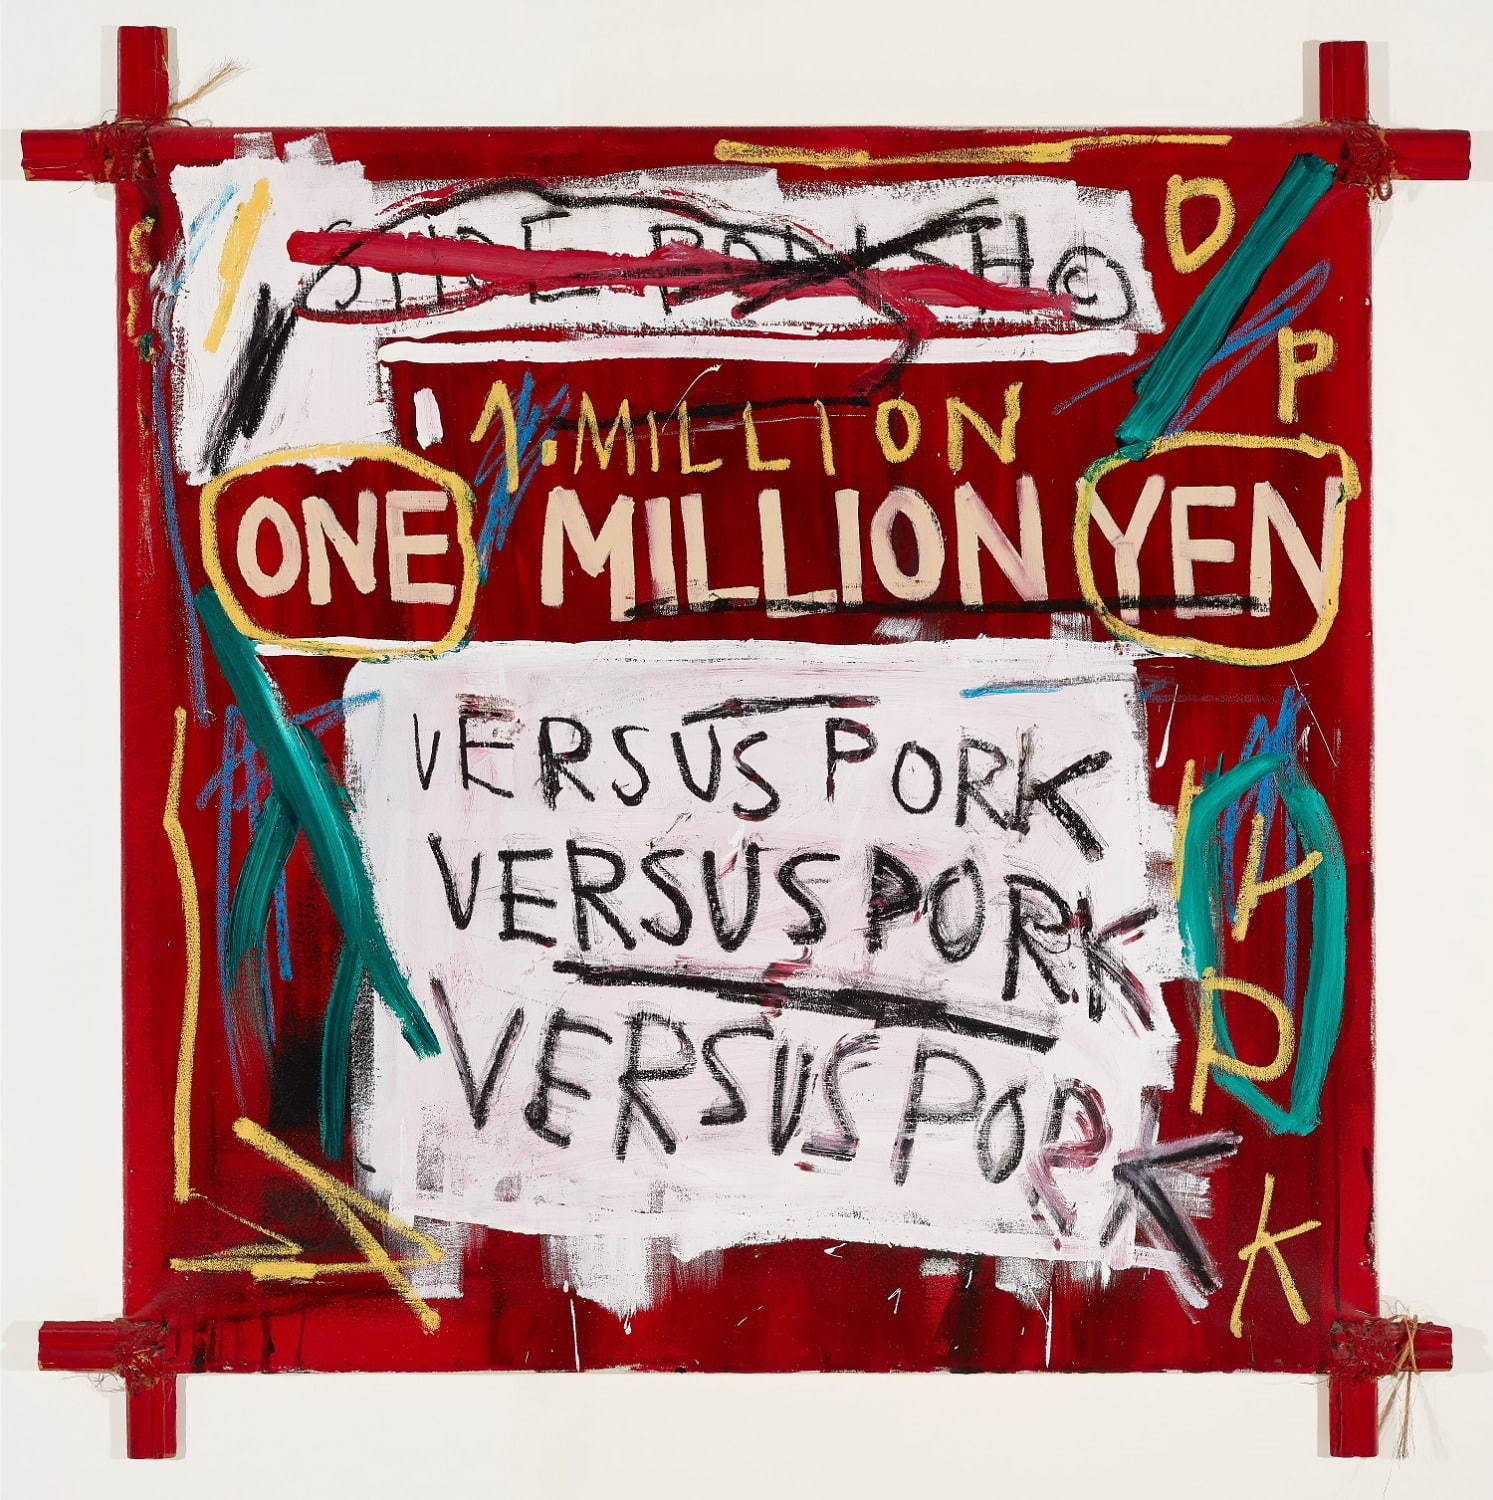 ジャン＝ミシェル・バスキア
Napoleon,1982
Acrylic and oilstick on canvas, mounted on tied wood supports
121.92 x 121.92 cm
Private Collection, Courtesy of the Milwaukee Art Museum
Photo: John R. Glembin
Artwork © Estate of Jean-Michel Basquiat.
Licensed by Artestar, New York